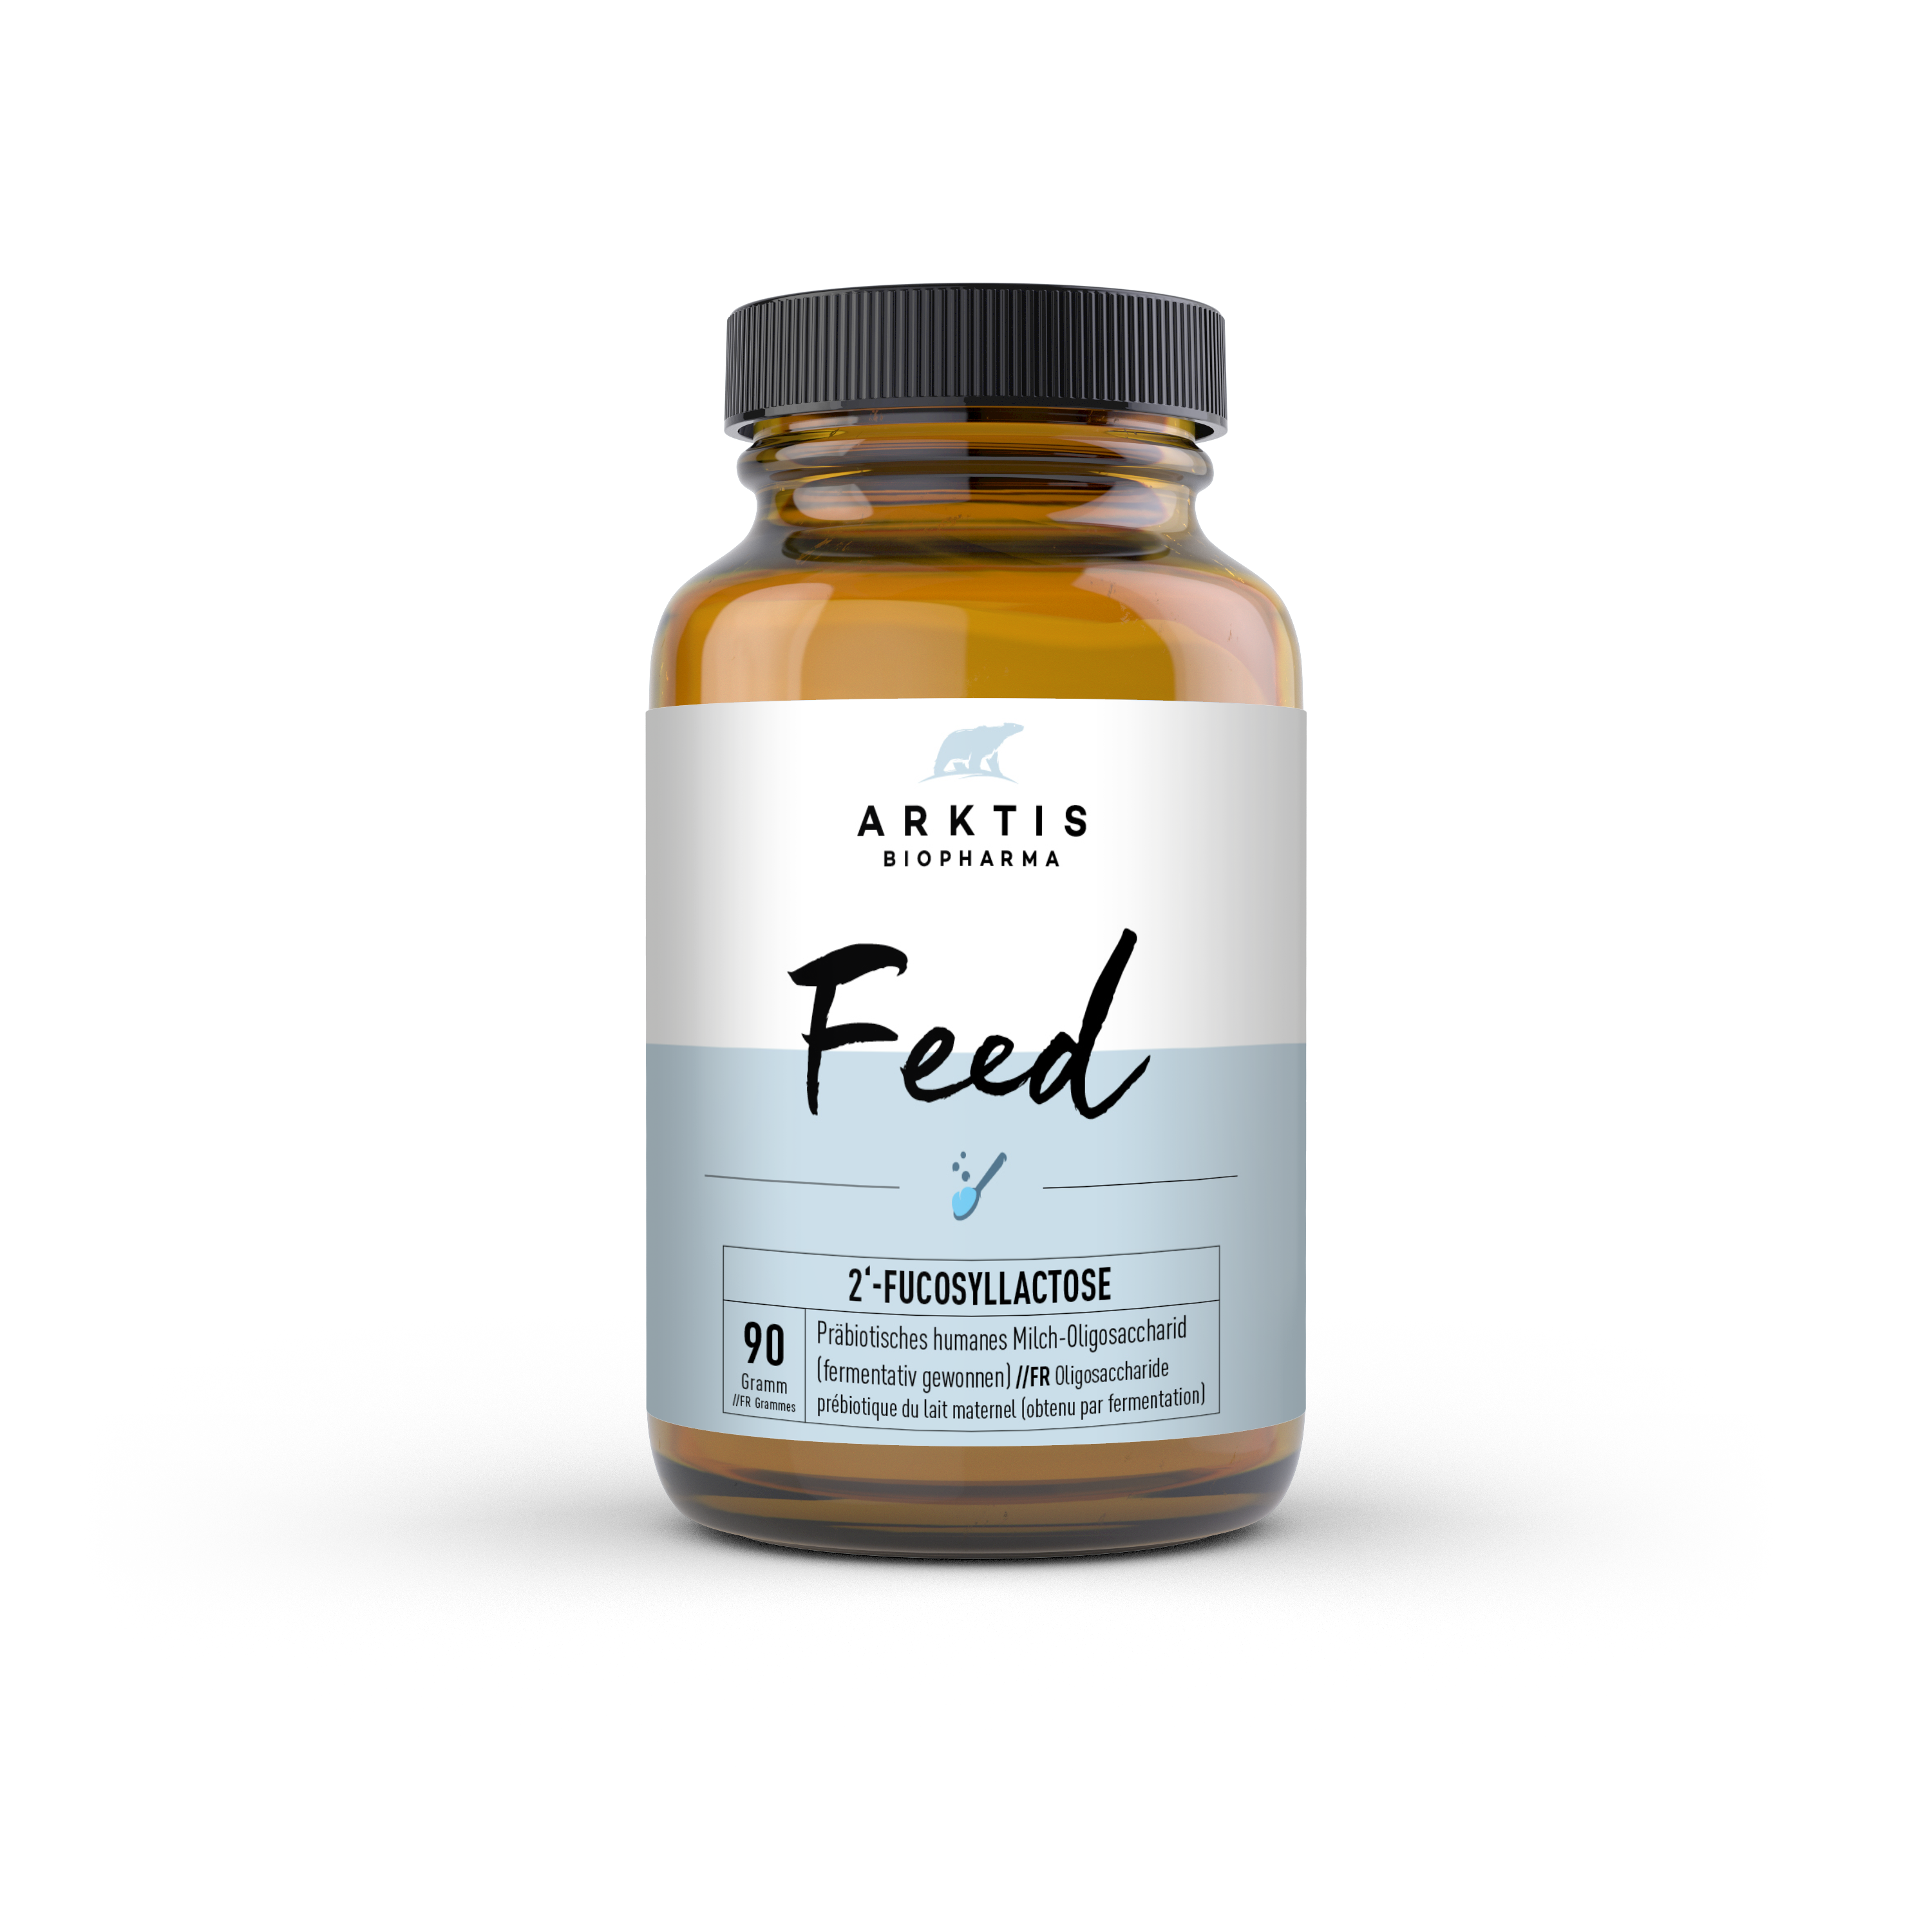 Feed | 2'-Fucosyllactose 90g